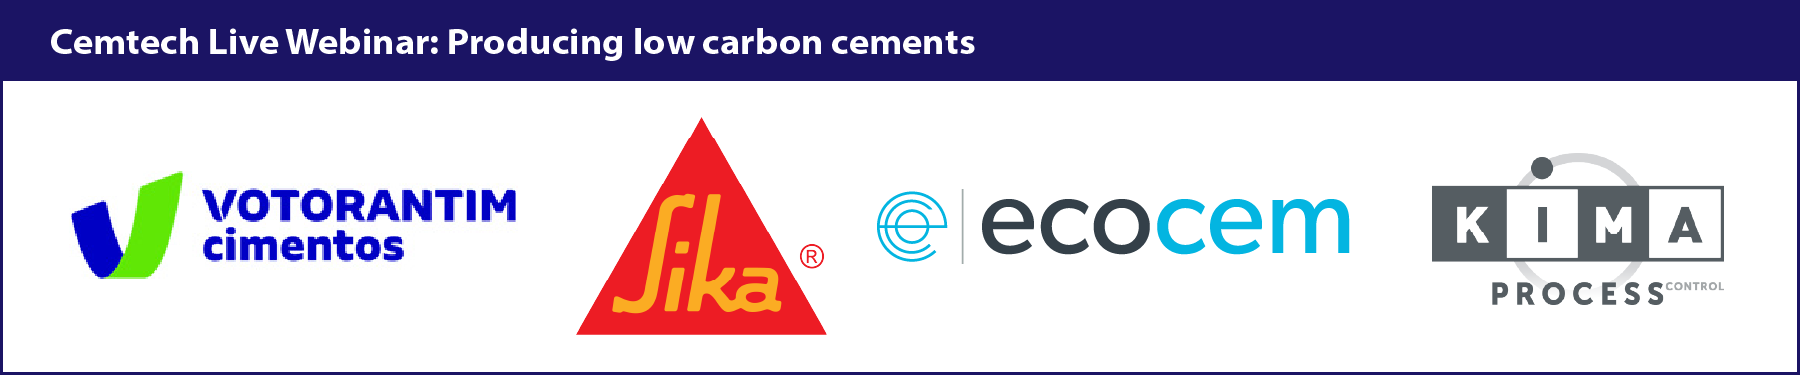 Cemtech Live Webinar: Low carbon cements sponsoring companies